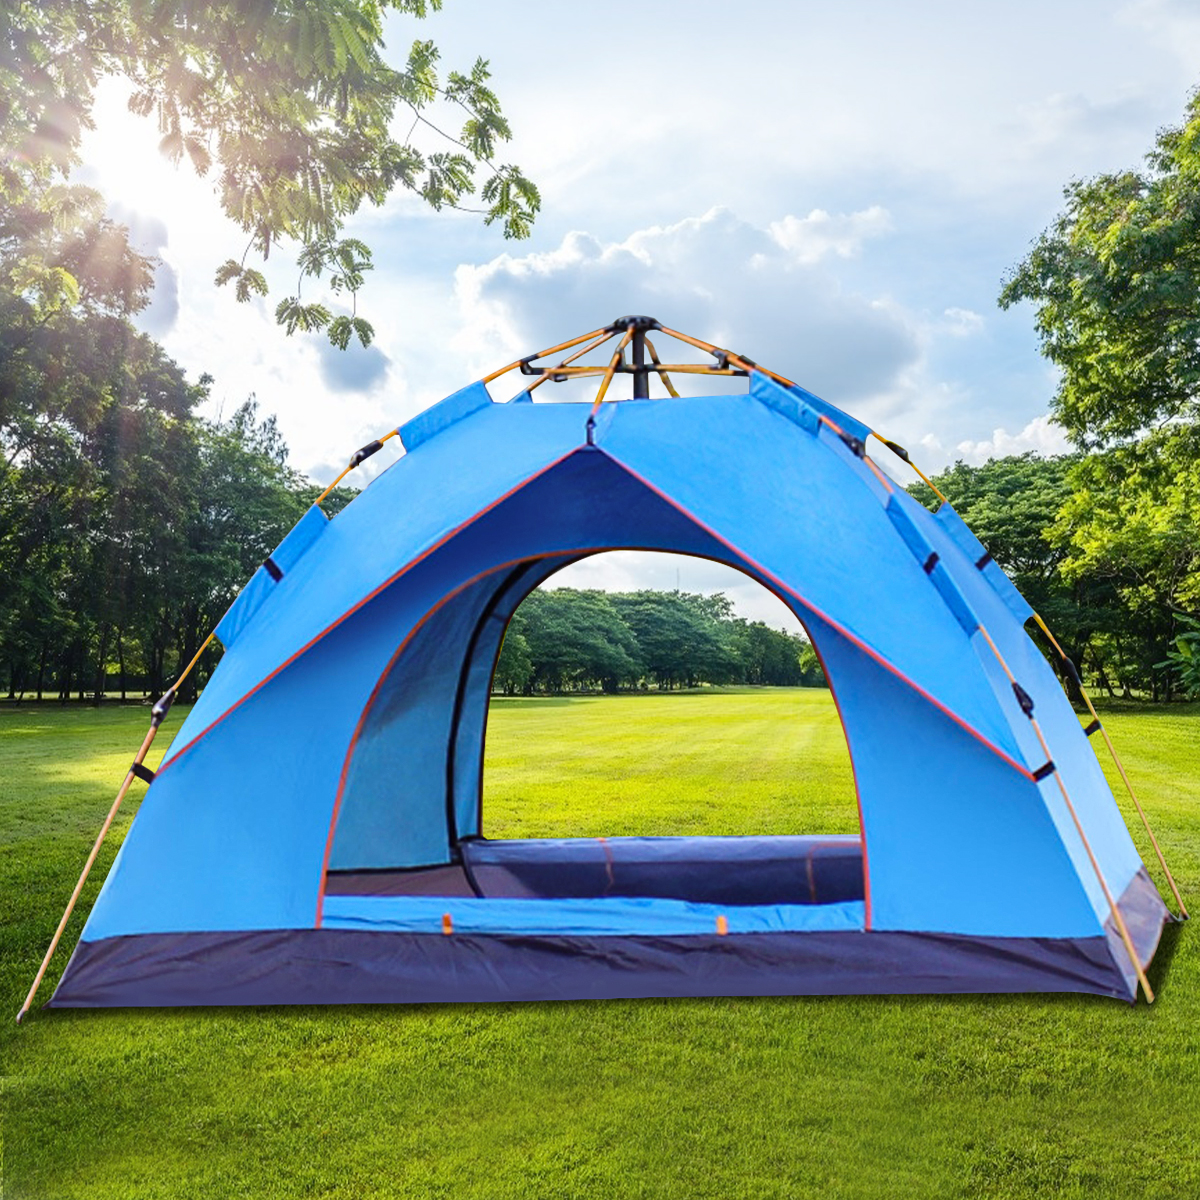 特別価格Mansader Person Camping Tent for Outdoor Camping Family Beach Hiking  Travel (Orange)並行輸入 テント